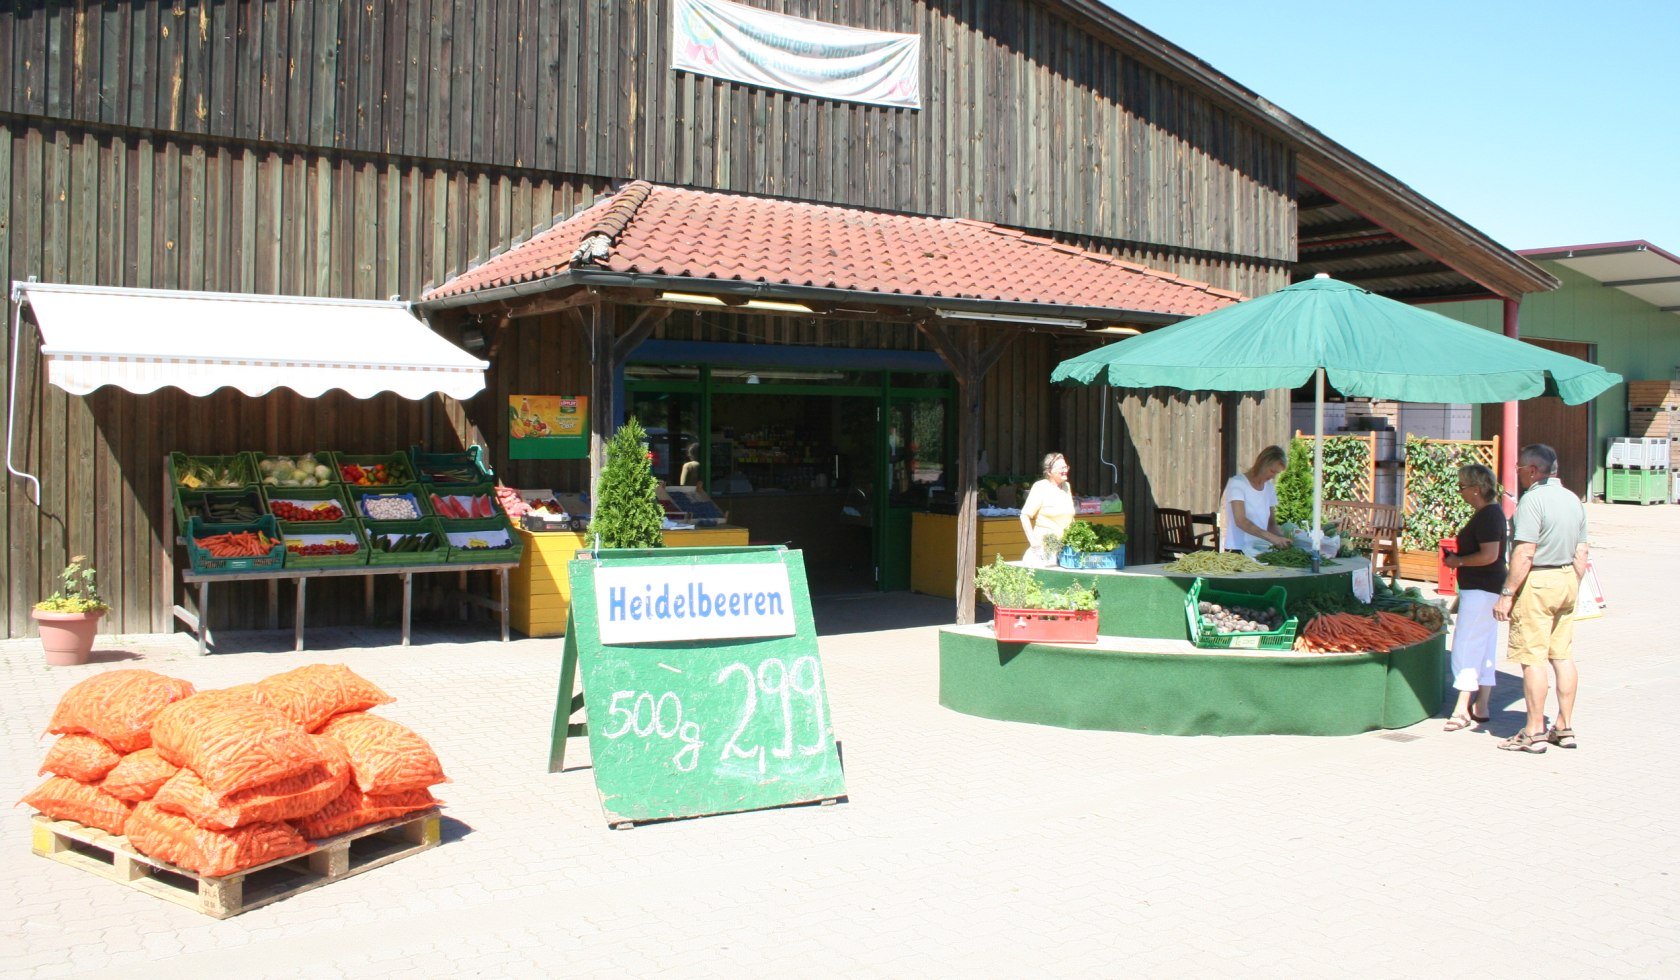 Hofladen mit Heidelbeerenverkauf in der Mittelweser-Region, © Mittelweser Touristik GmbH